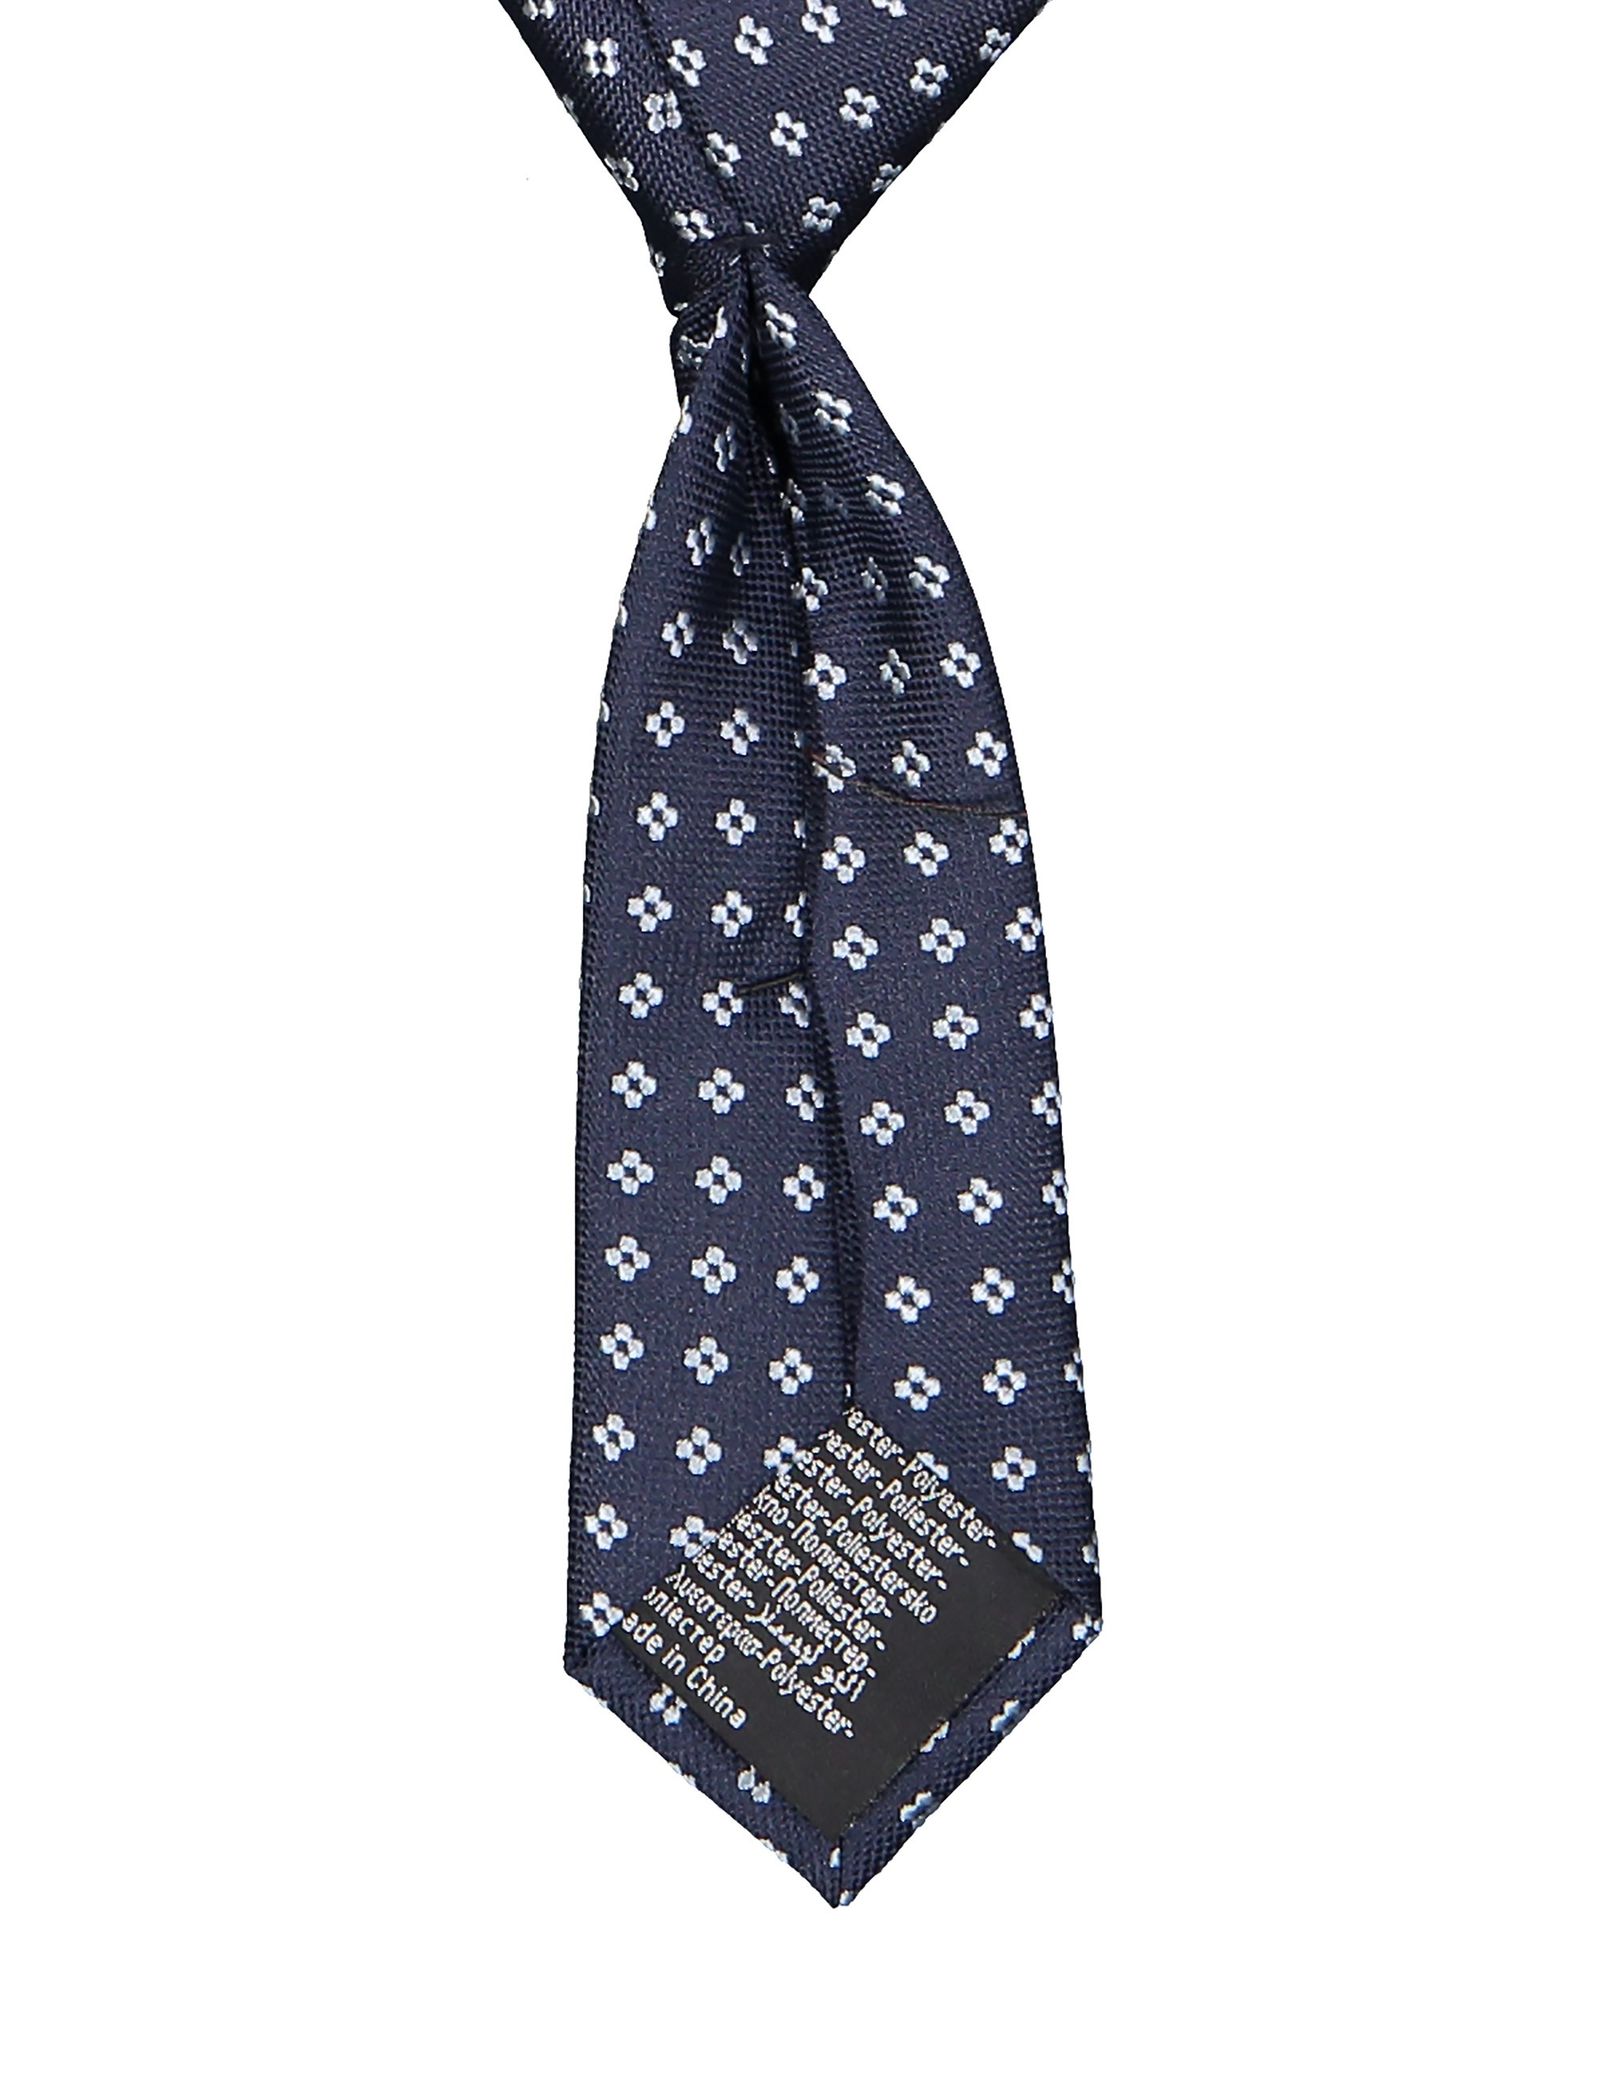 کراوات طرح دار پسرانه - ایدکس تک سایز - سرمه اي - 3